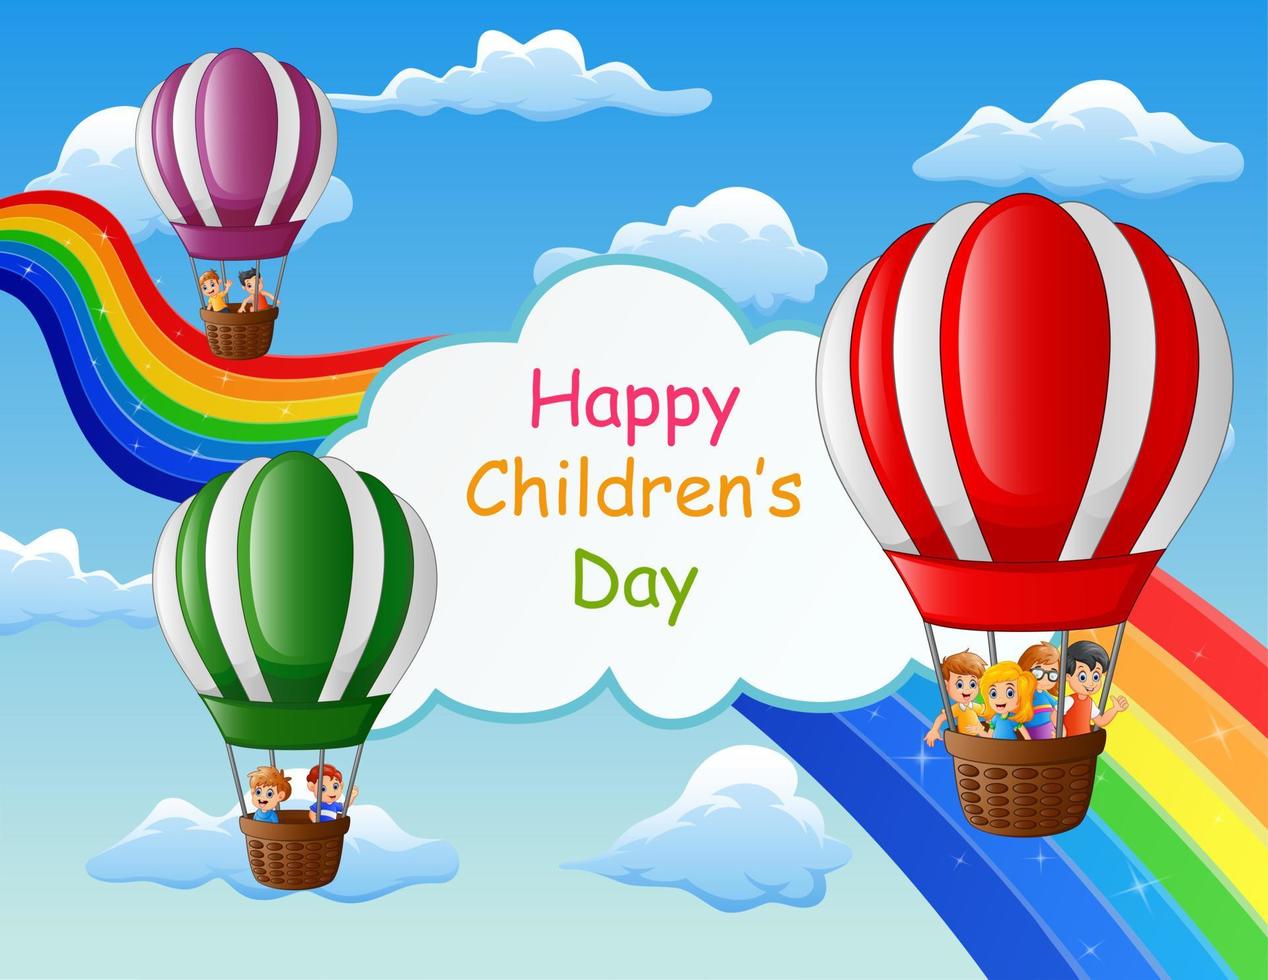 cartaz de dia das crianças feliz com crianças em balão de ar vetor